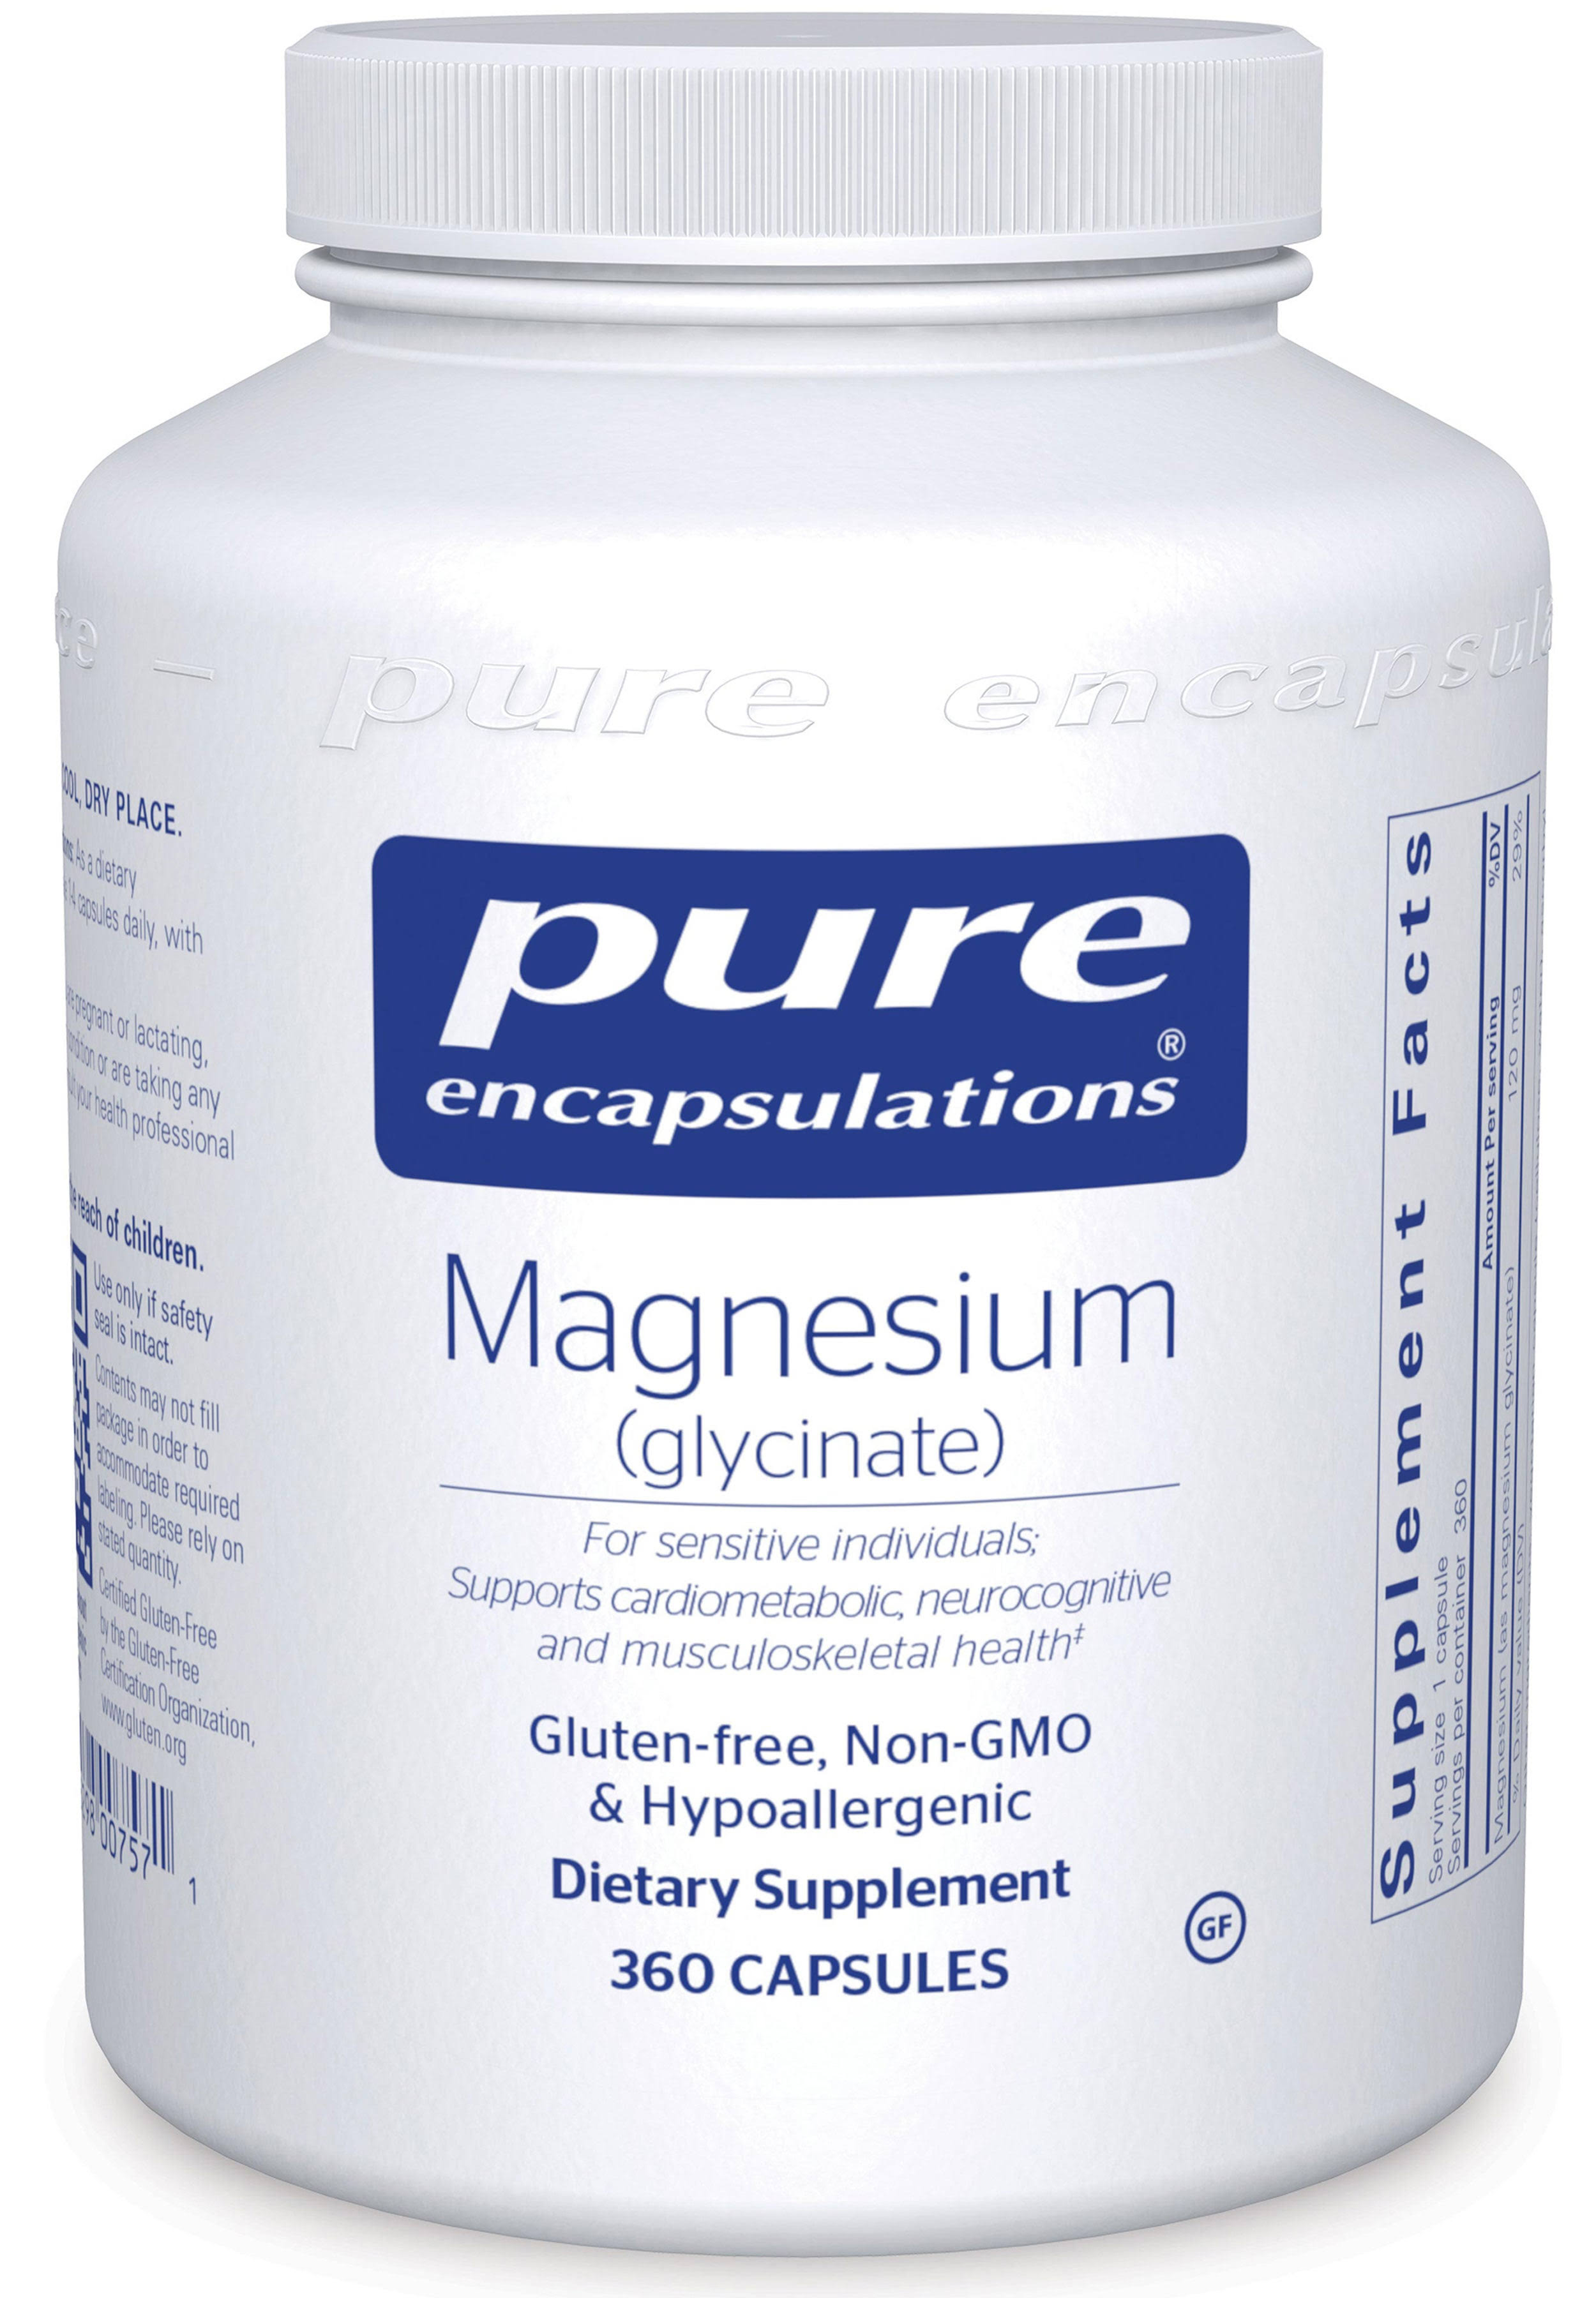 Pure Encapsulations Magnesium Glycinate Supplement - 360ct